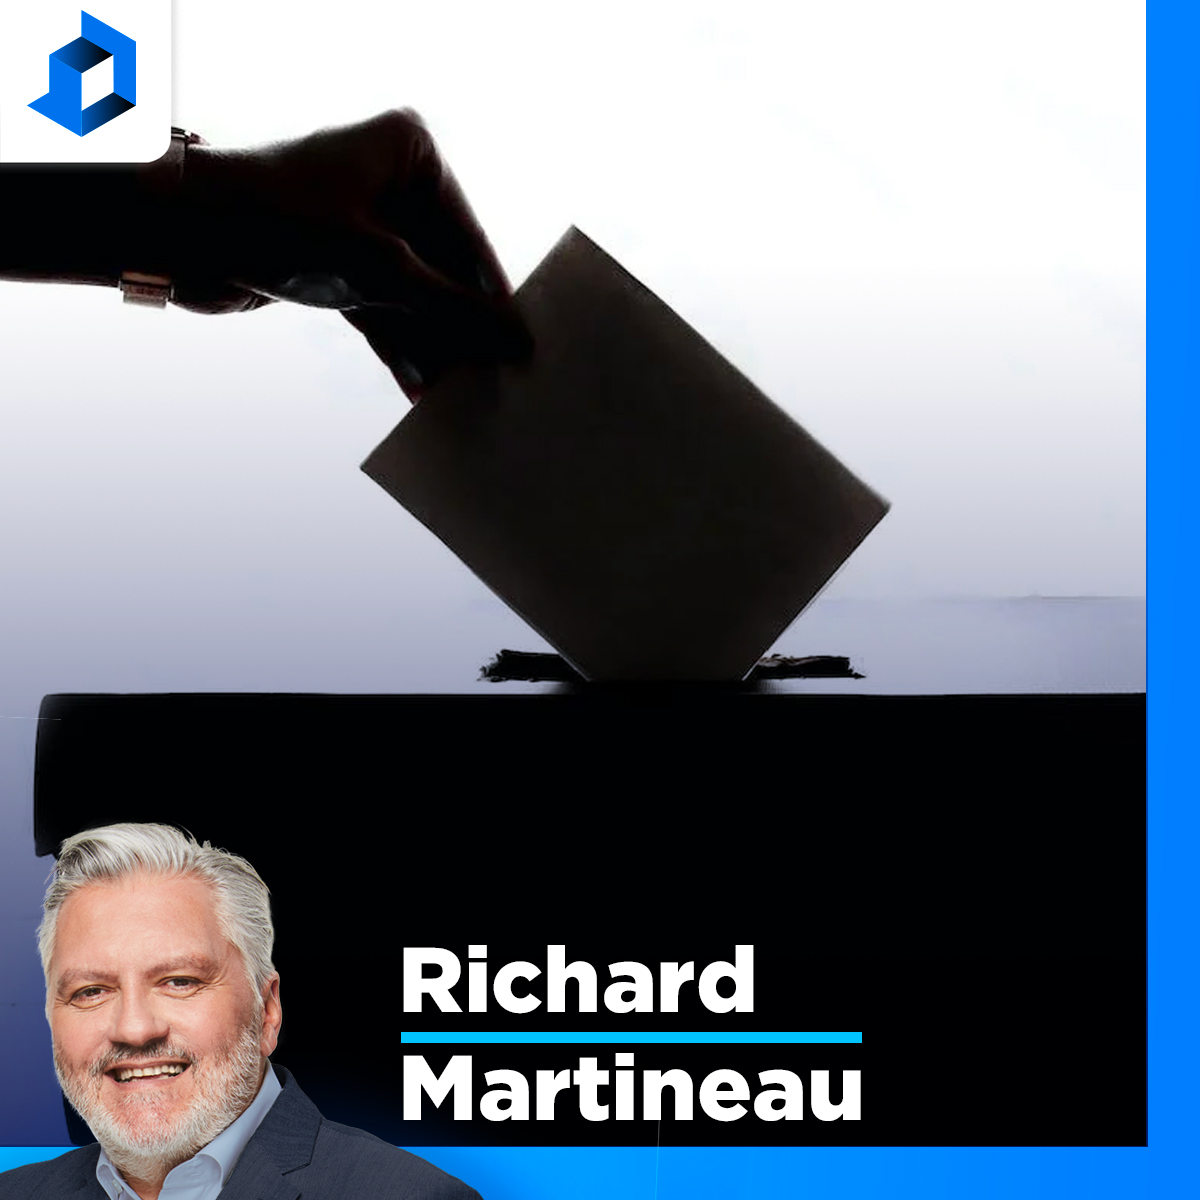 «Vous n’avez pas de bonnes raisons pour ne PAS aller voter», dit Martineau